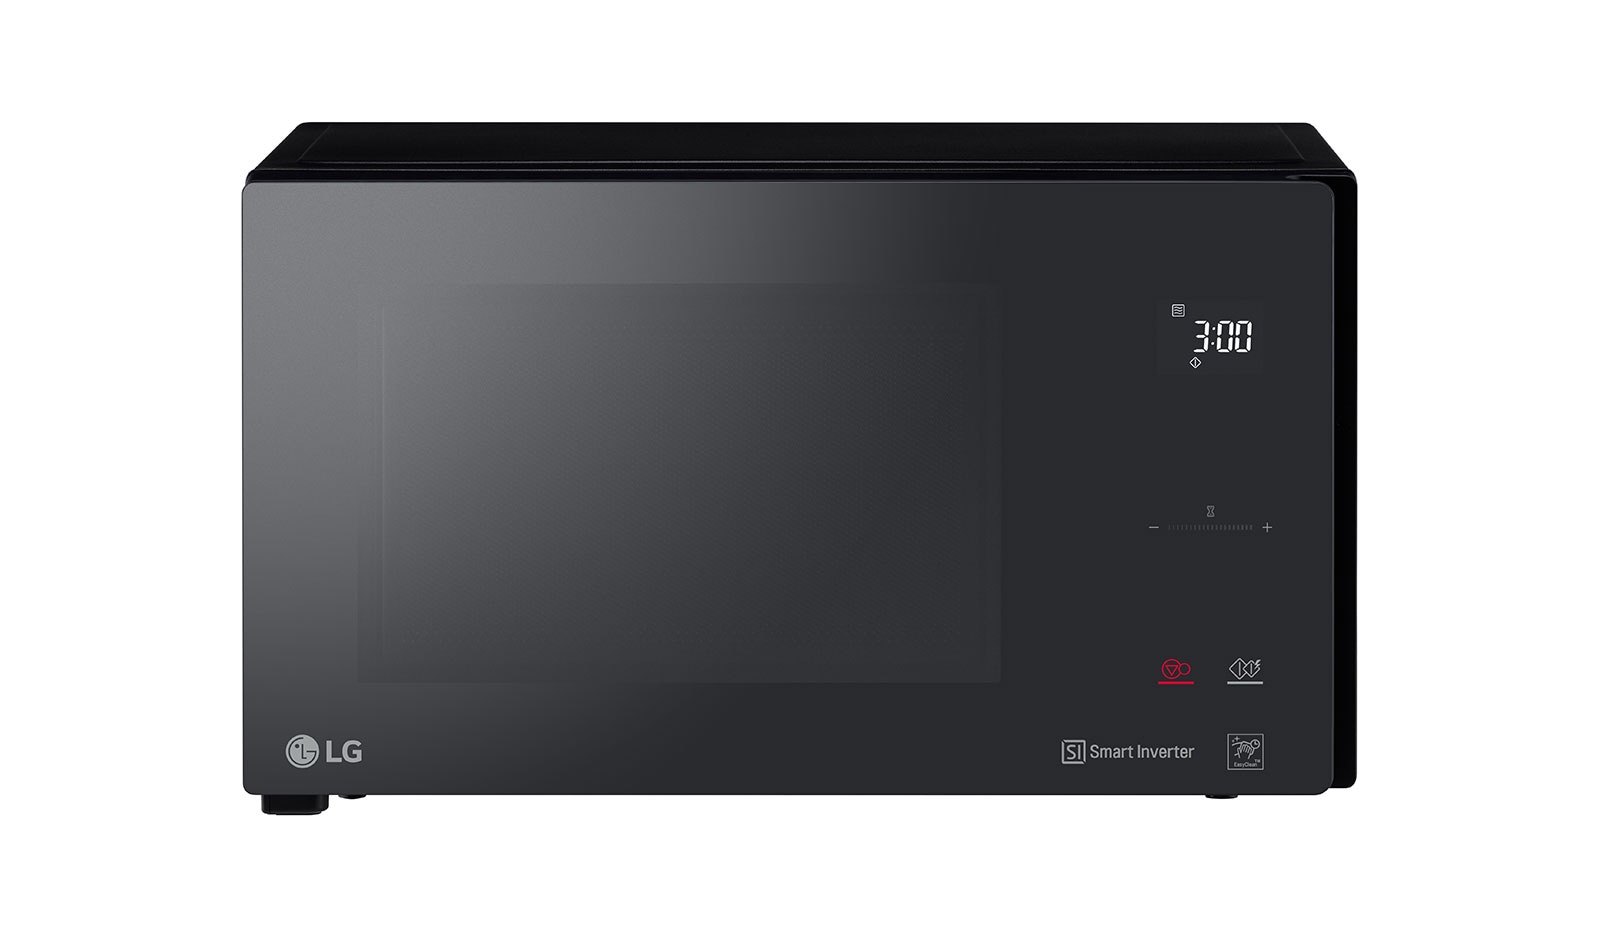 LG Microwave Oven MH6595DIS